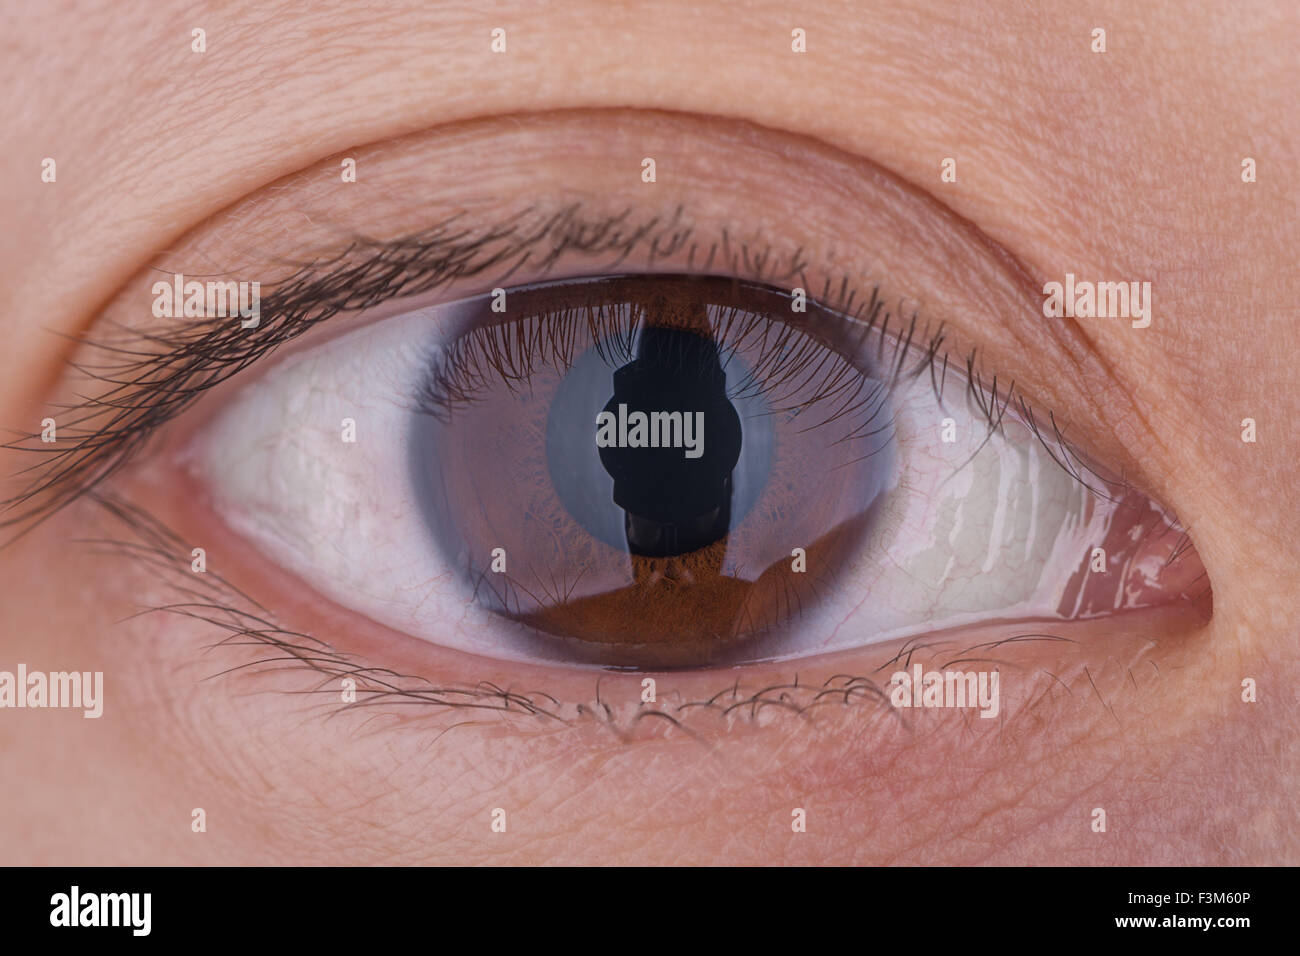 Eine echte 1:1 Makro-Aufnahme des braunen Auge einer Frau. Stockfoto